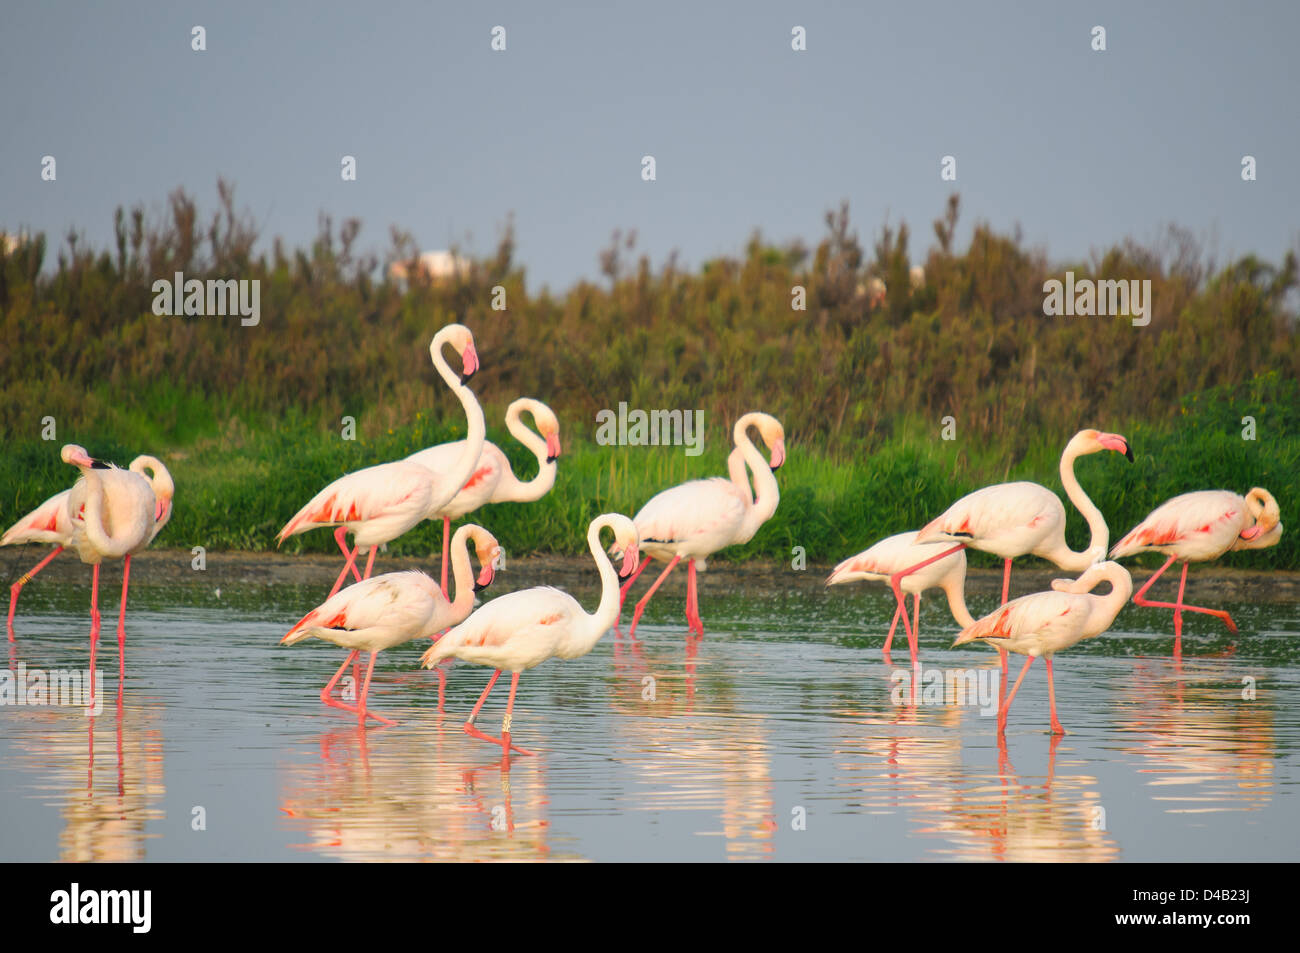 Flamingos walking on the lagoon Stock Photo